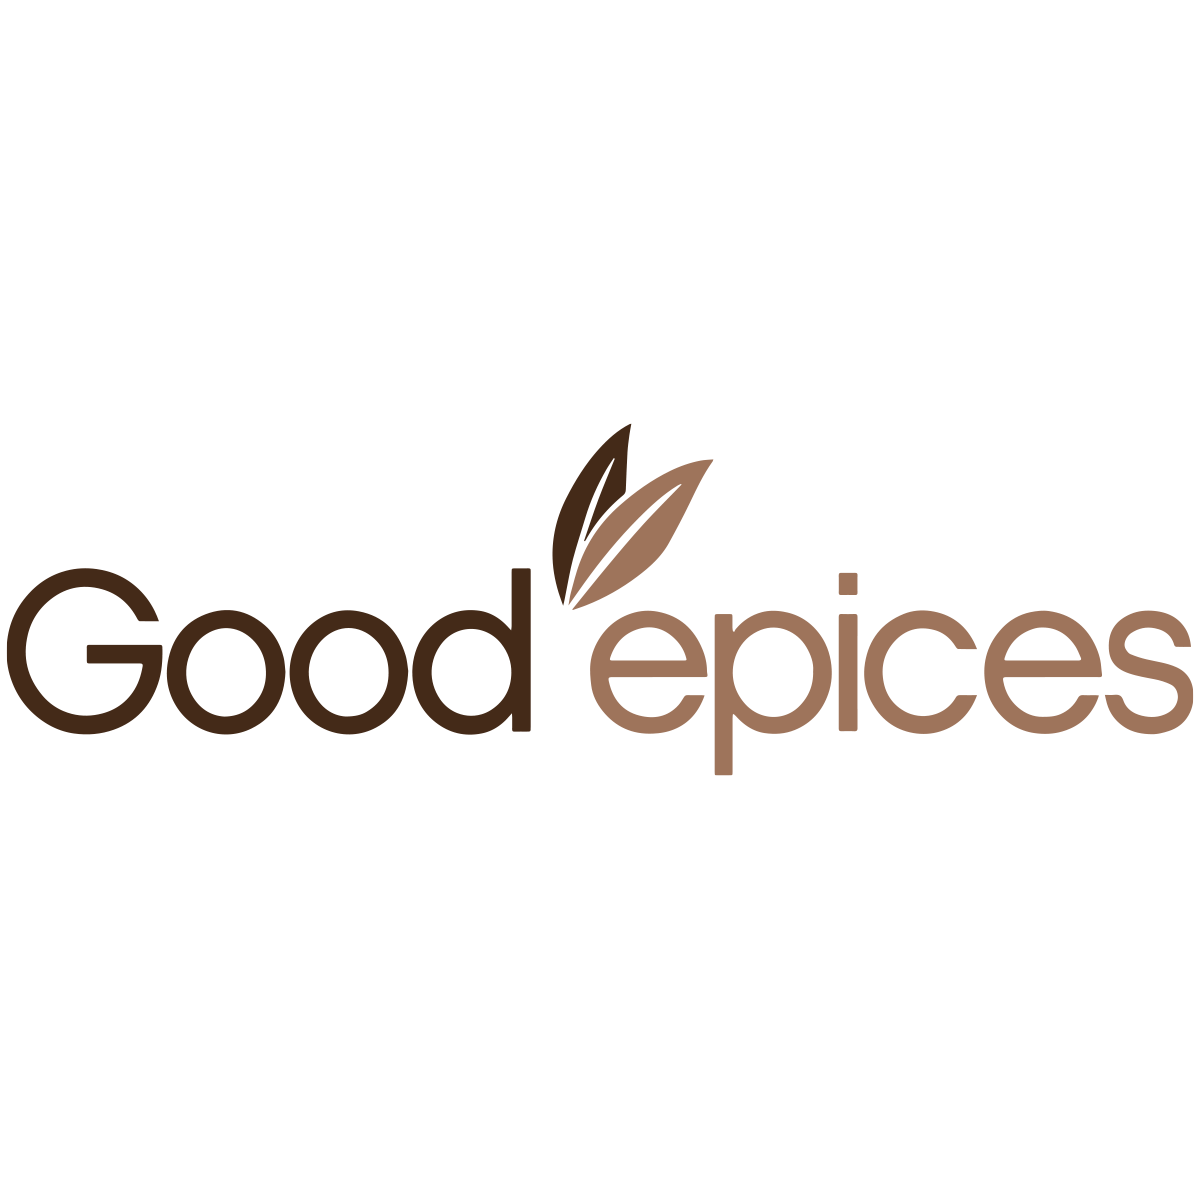 Good épices